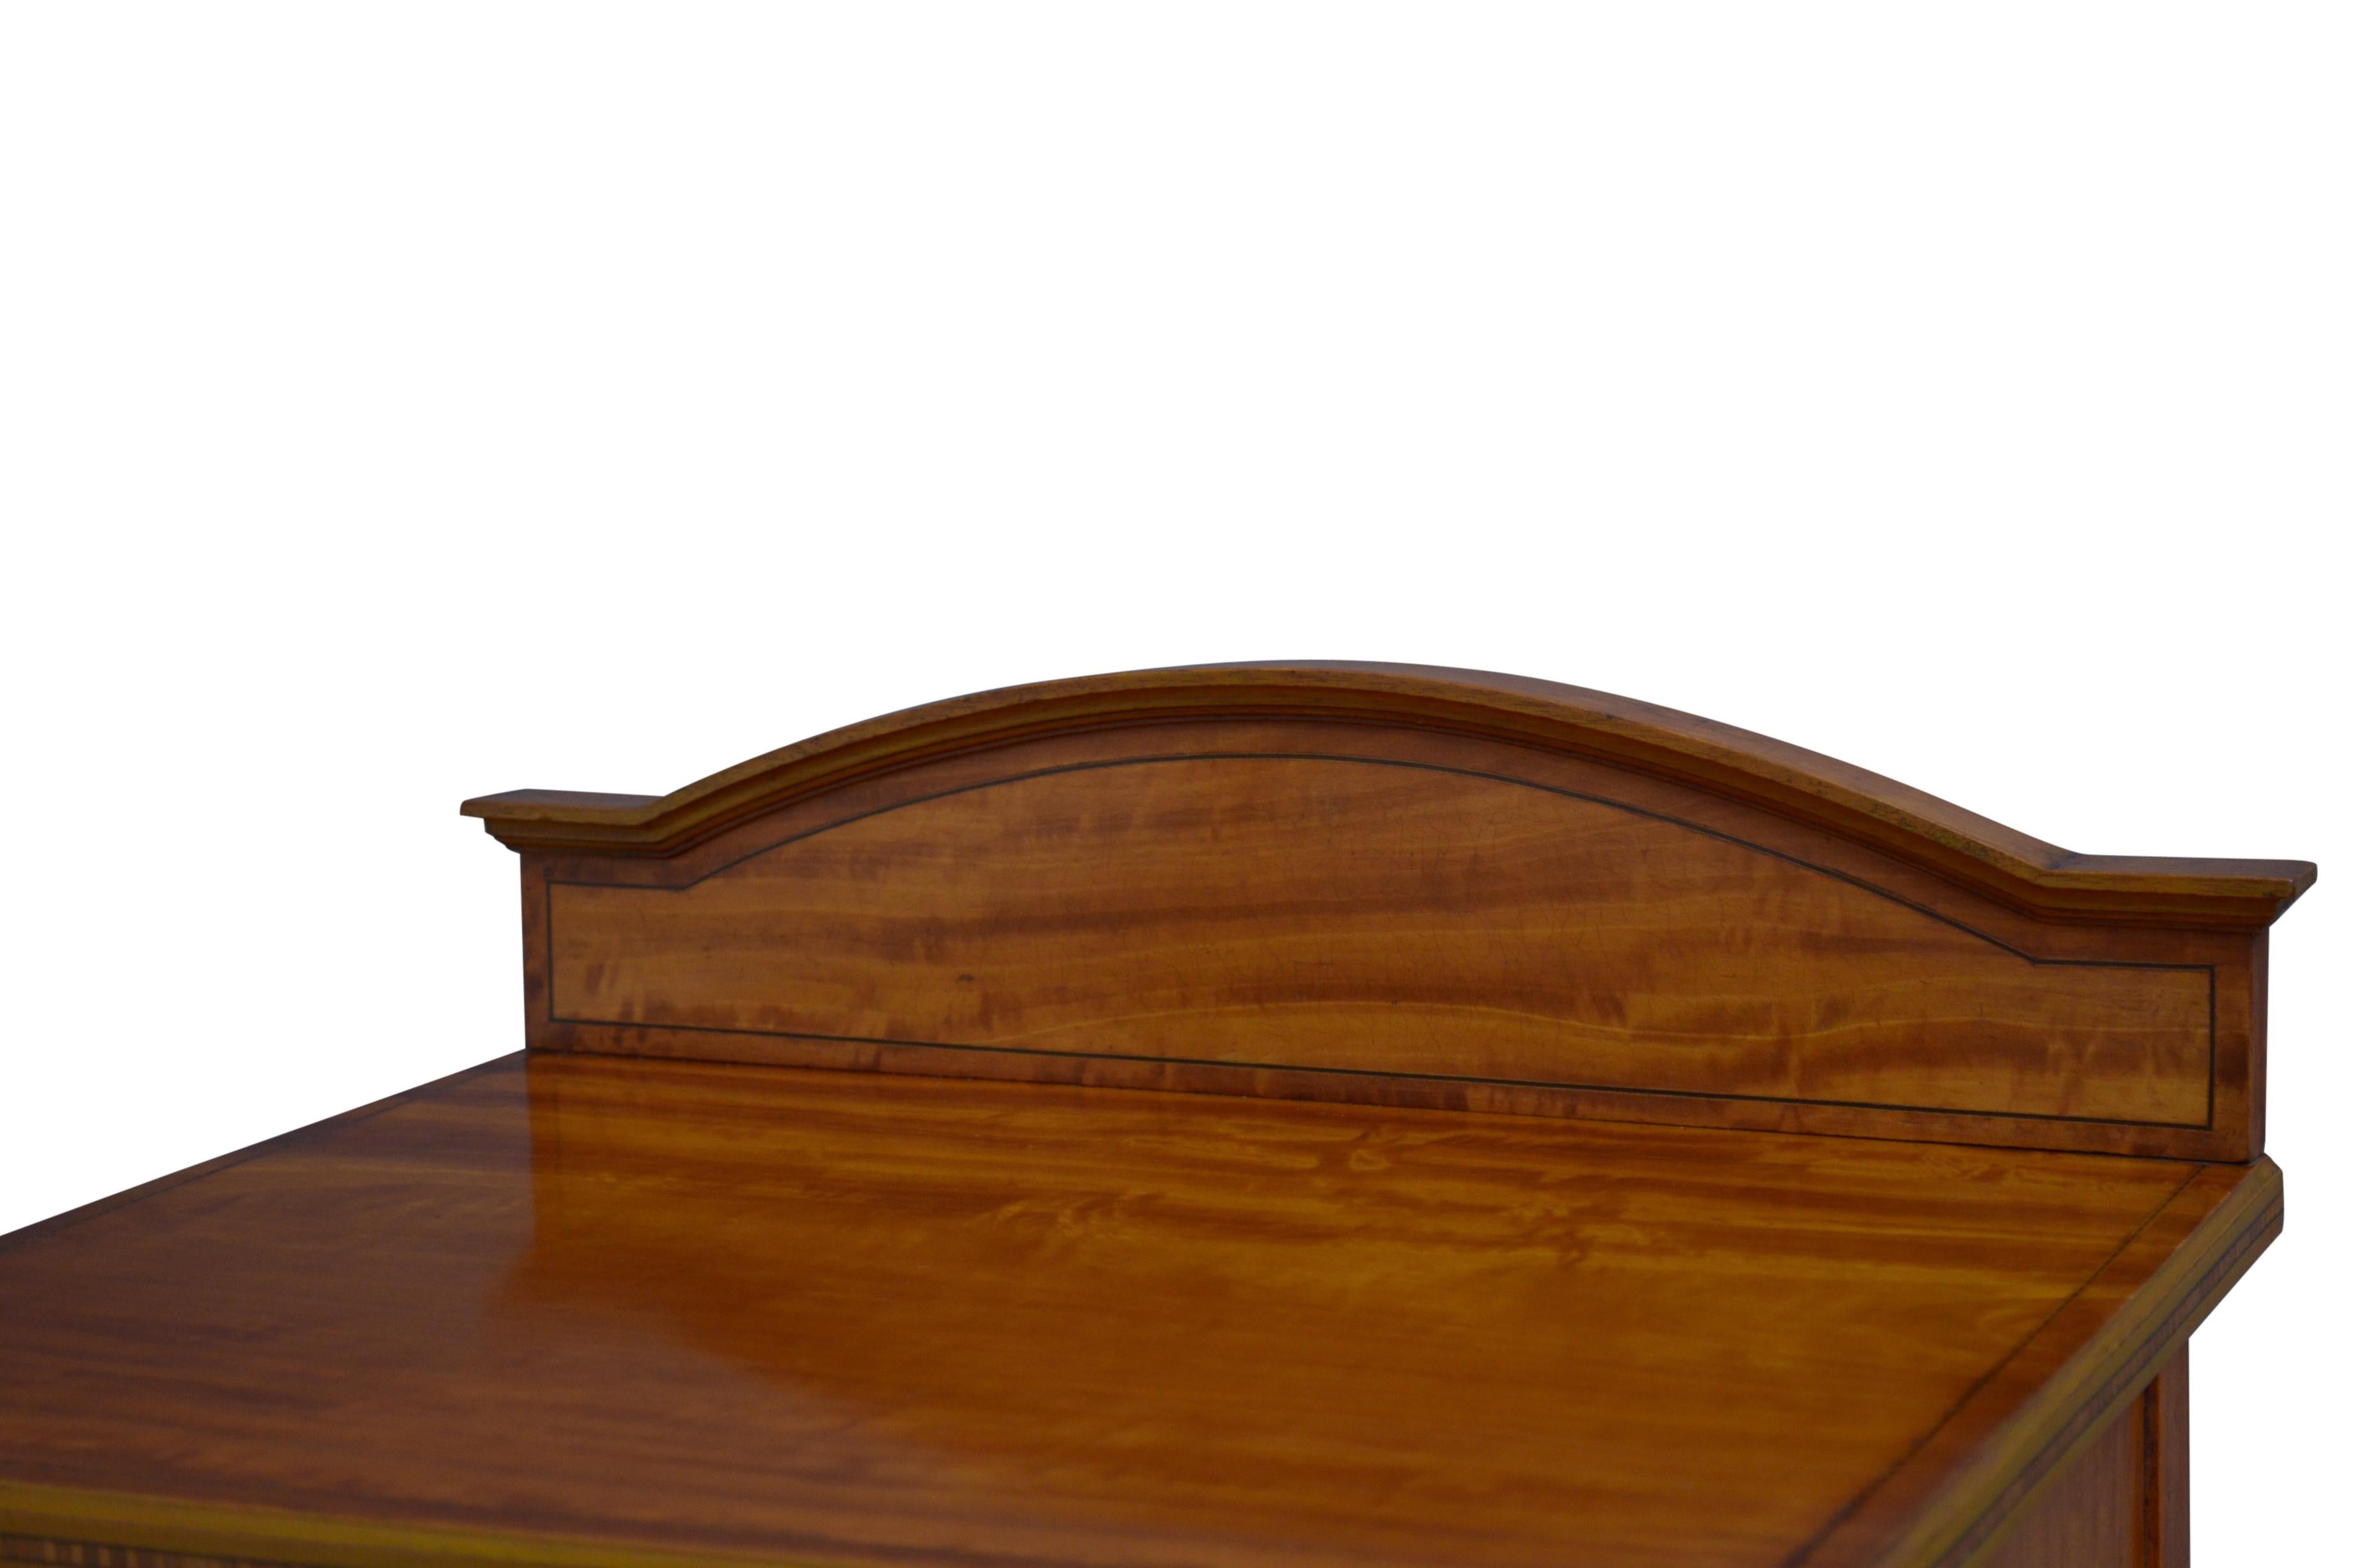 K0566 Feiner edwardianischer Nachttisch aus satiniertem Holz, mit geformtem Aufsatz und eingelegter Platte über einer Schublade und einer Schranktür, beide mit originalen Messinggriffen versehen, auf schlanken, geriffelten Beinen stehend. Dieser